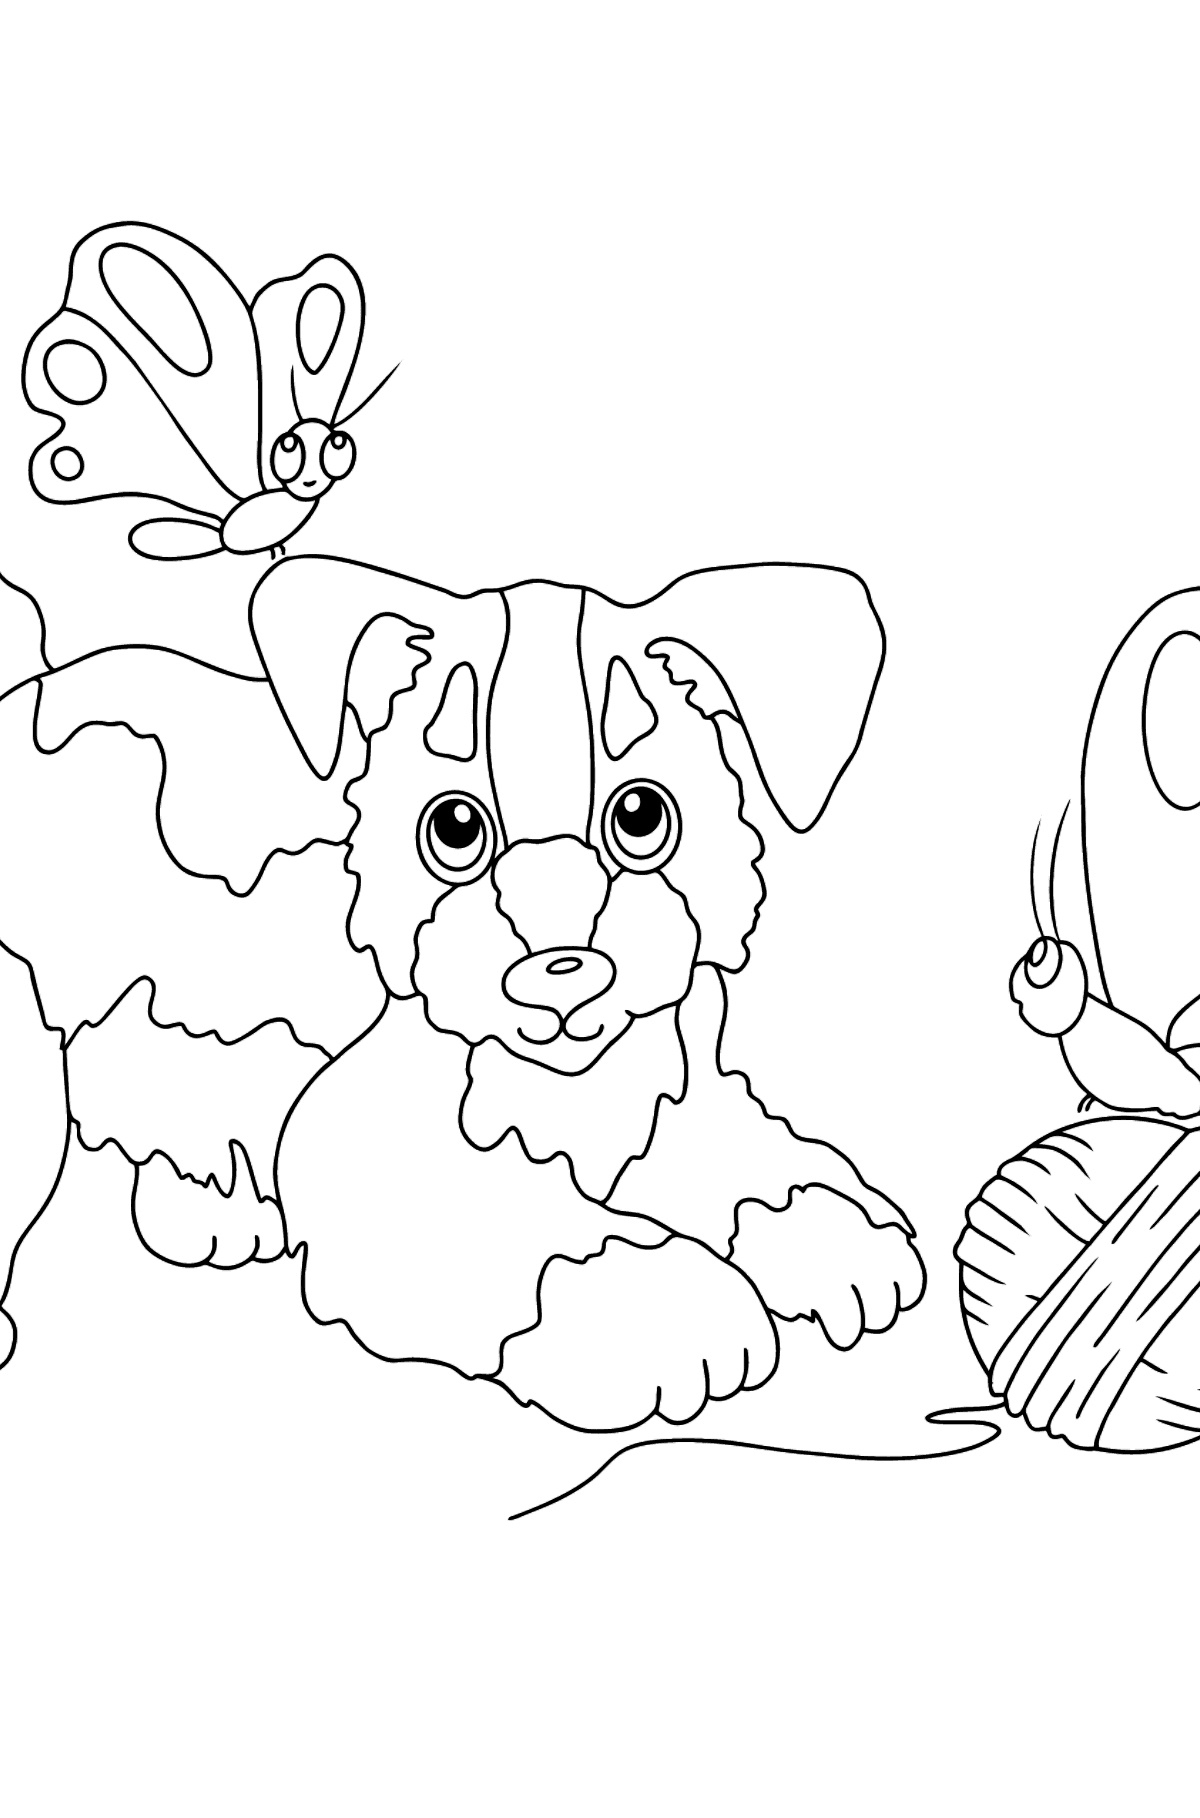 Ausmalbild - Ein Hund spielt mit einem Garnknäuel und Schmetterlingen - Malvorlagen für Kinder